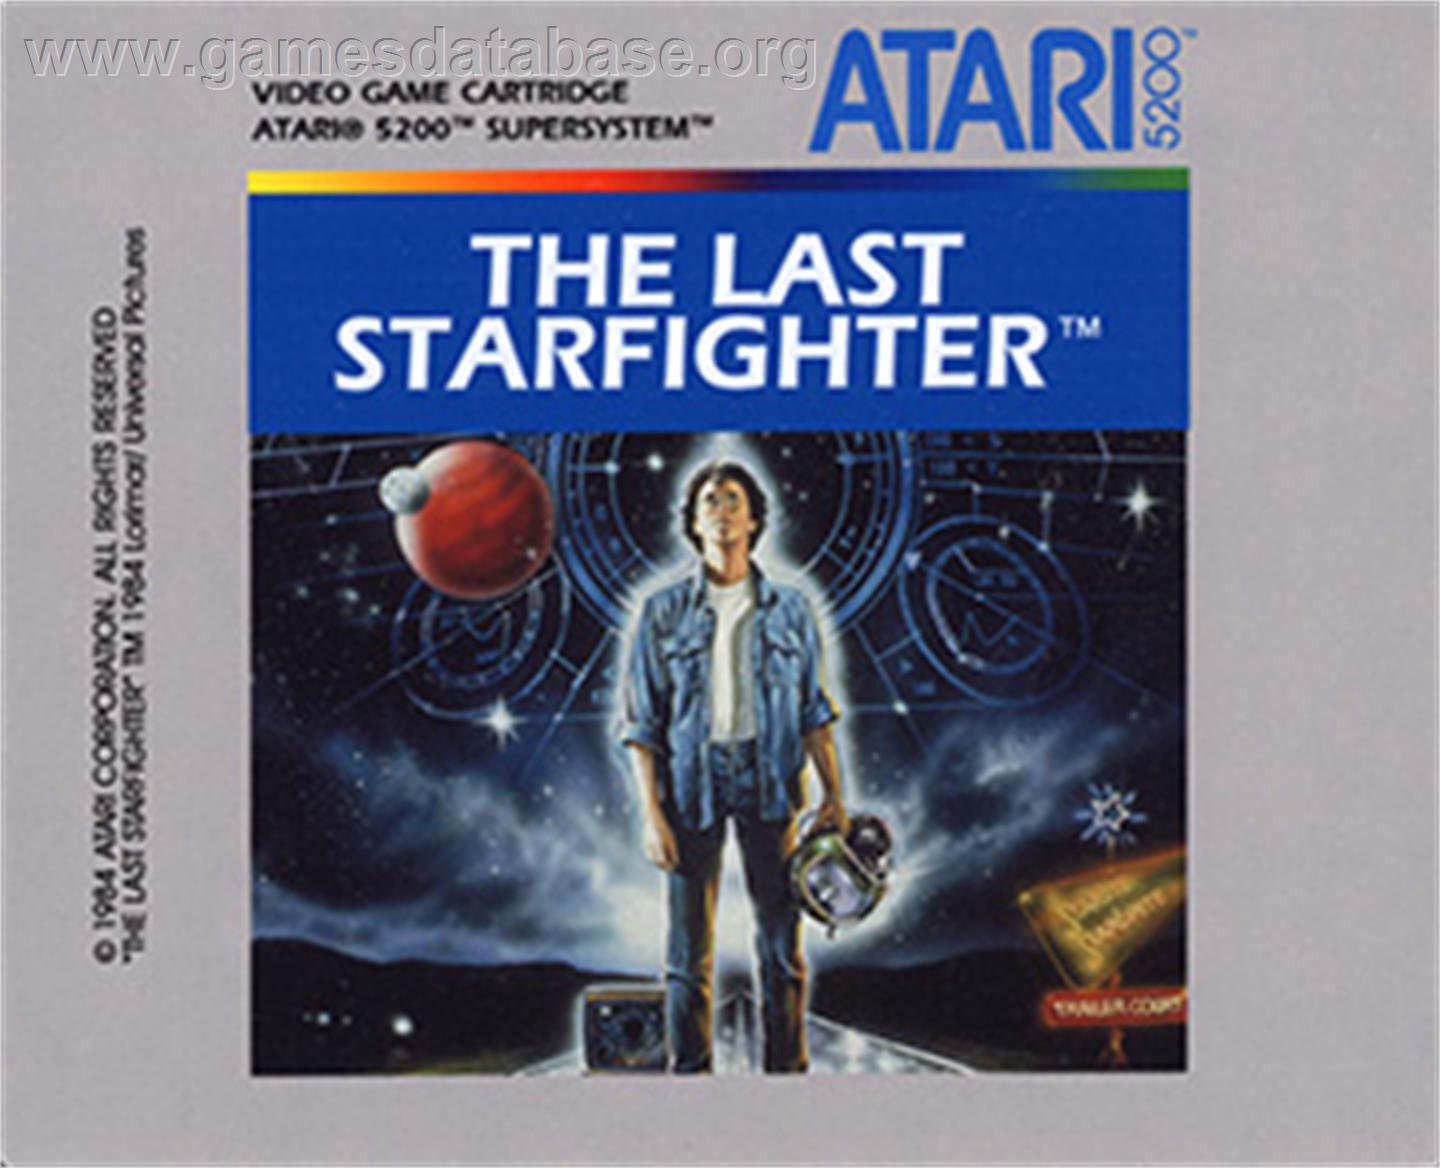 Last Starfighter - Atari 5200 - Artwork - Cartridge Top